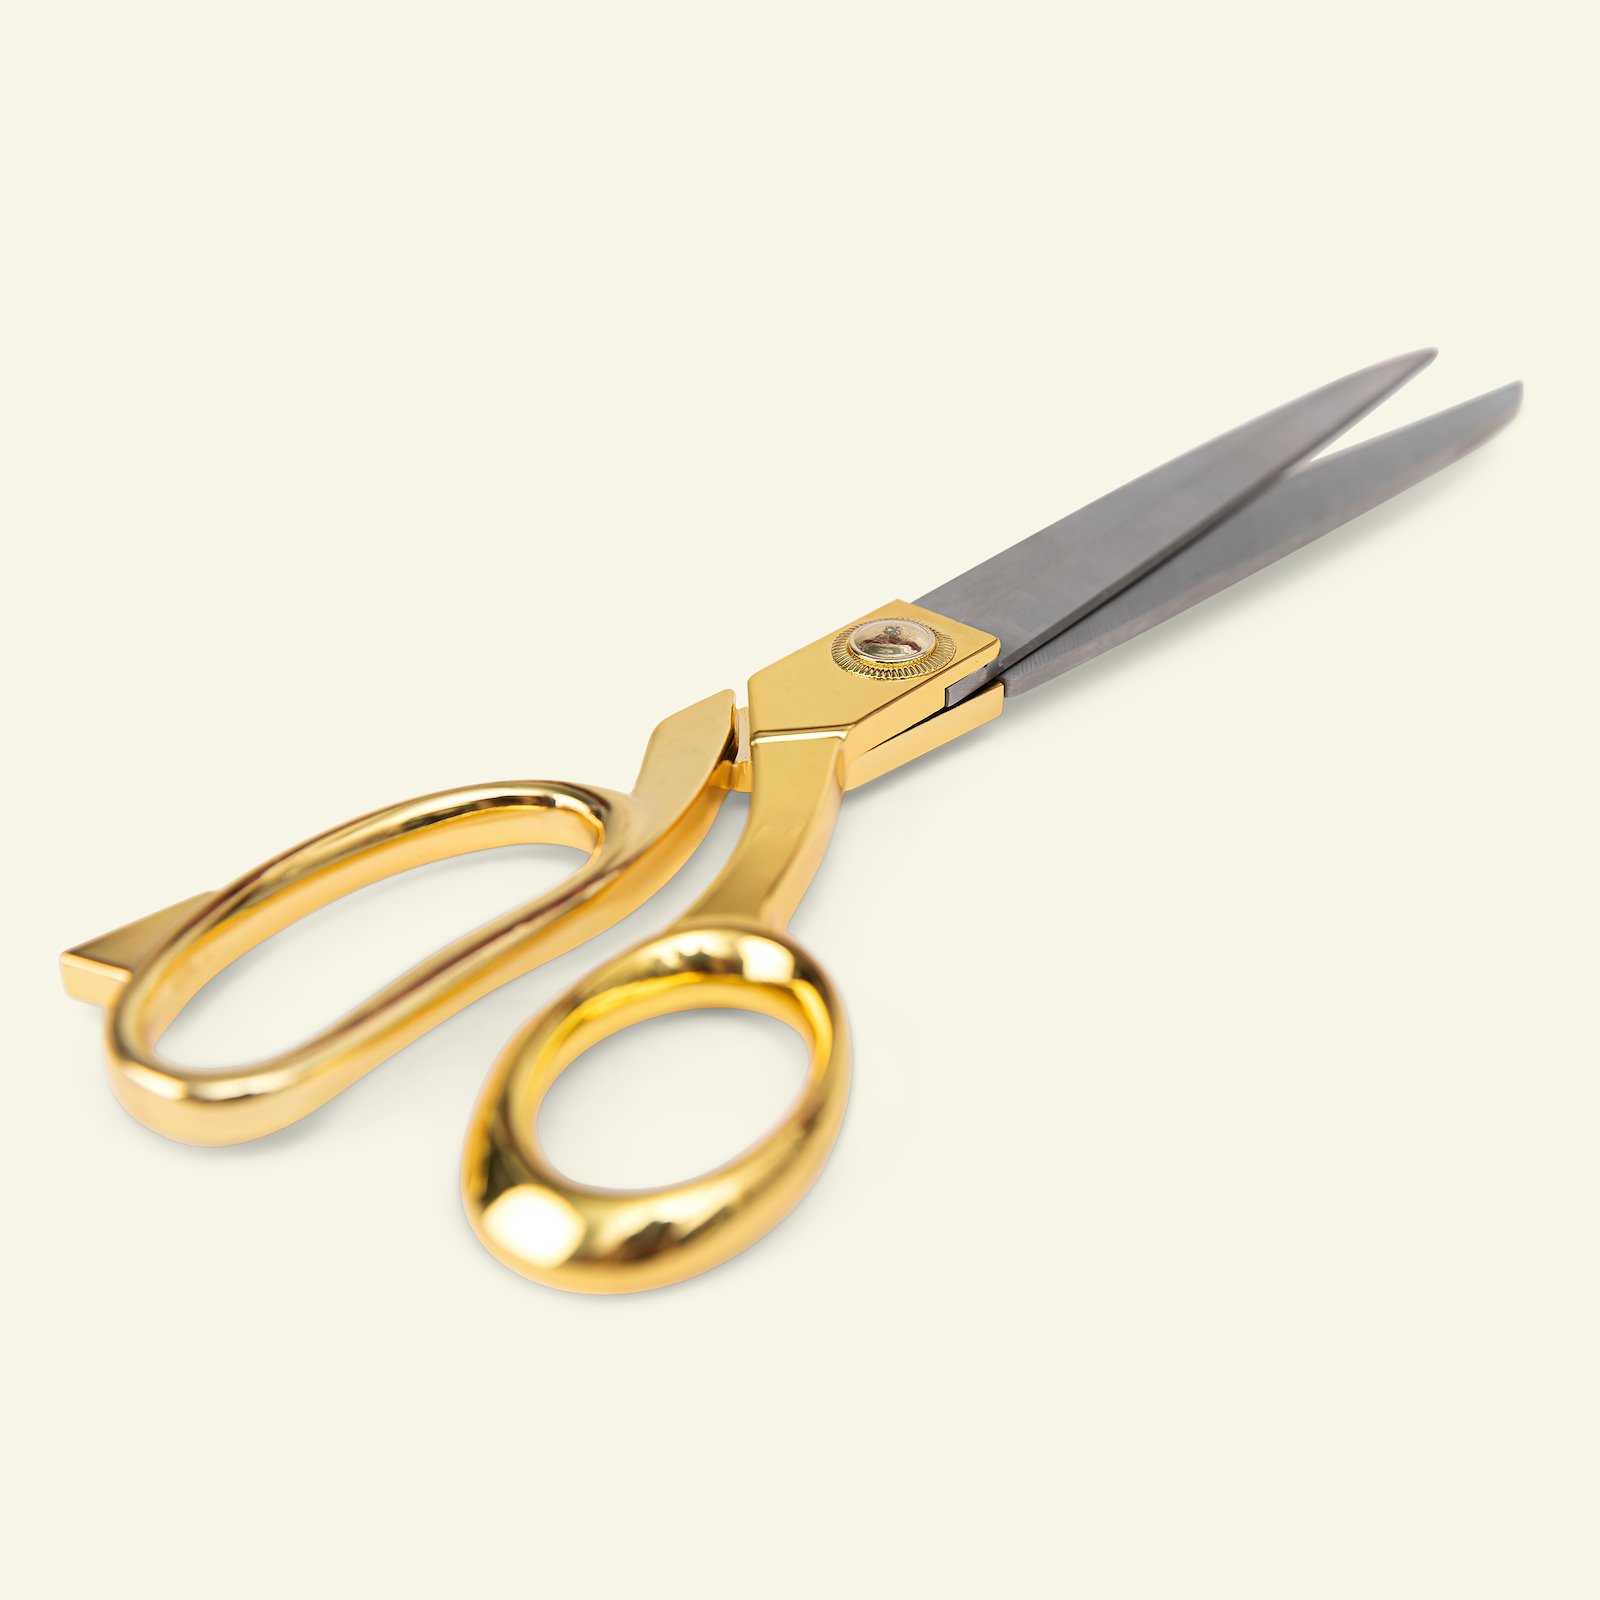 Scissors 27cm gold col. 1pcs 42056_pack_b